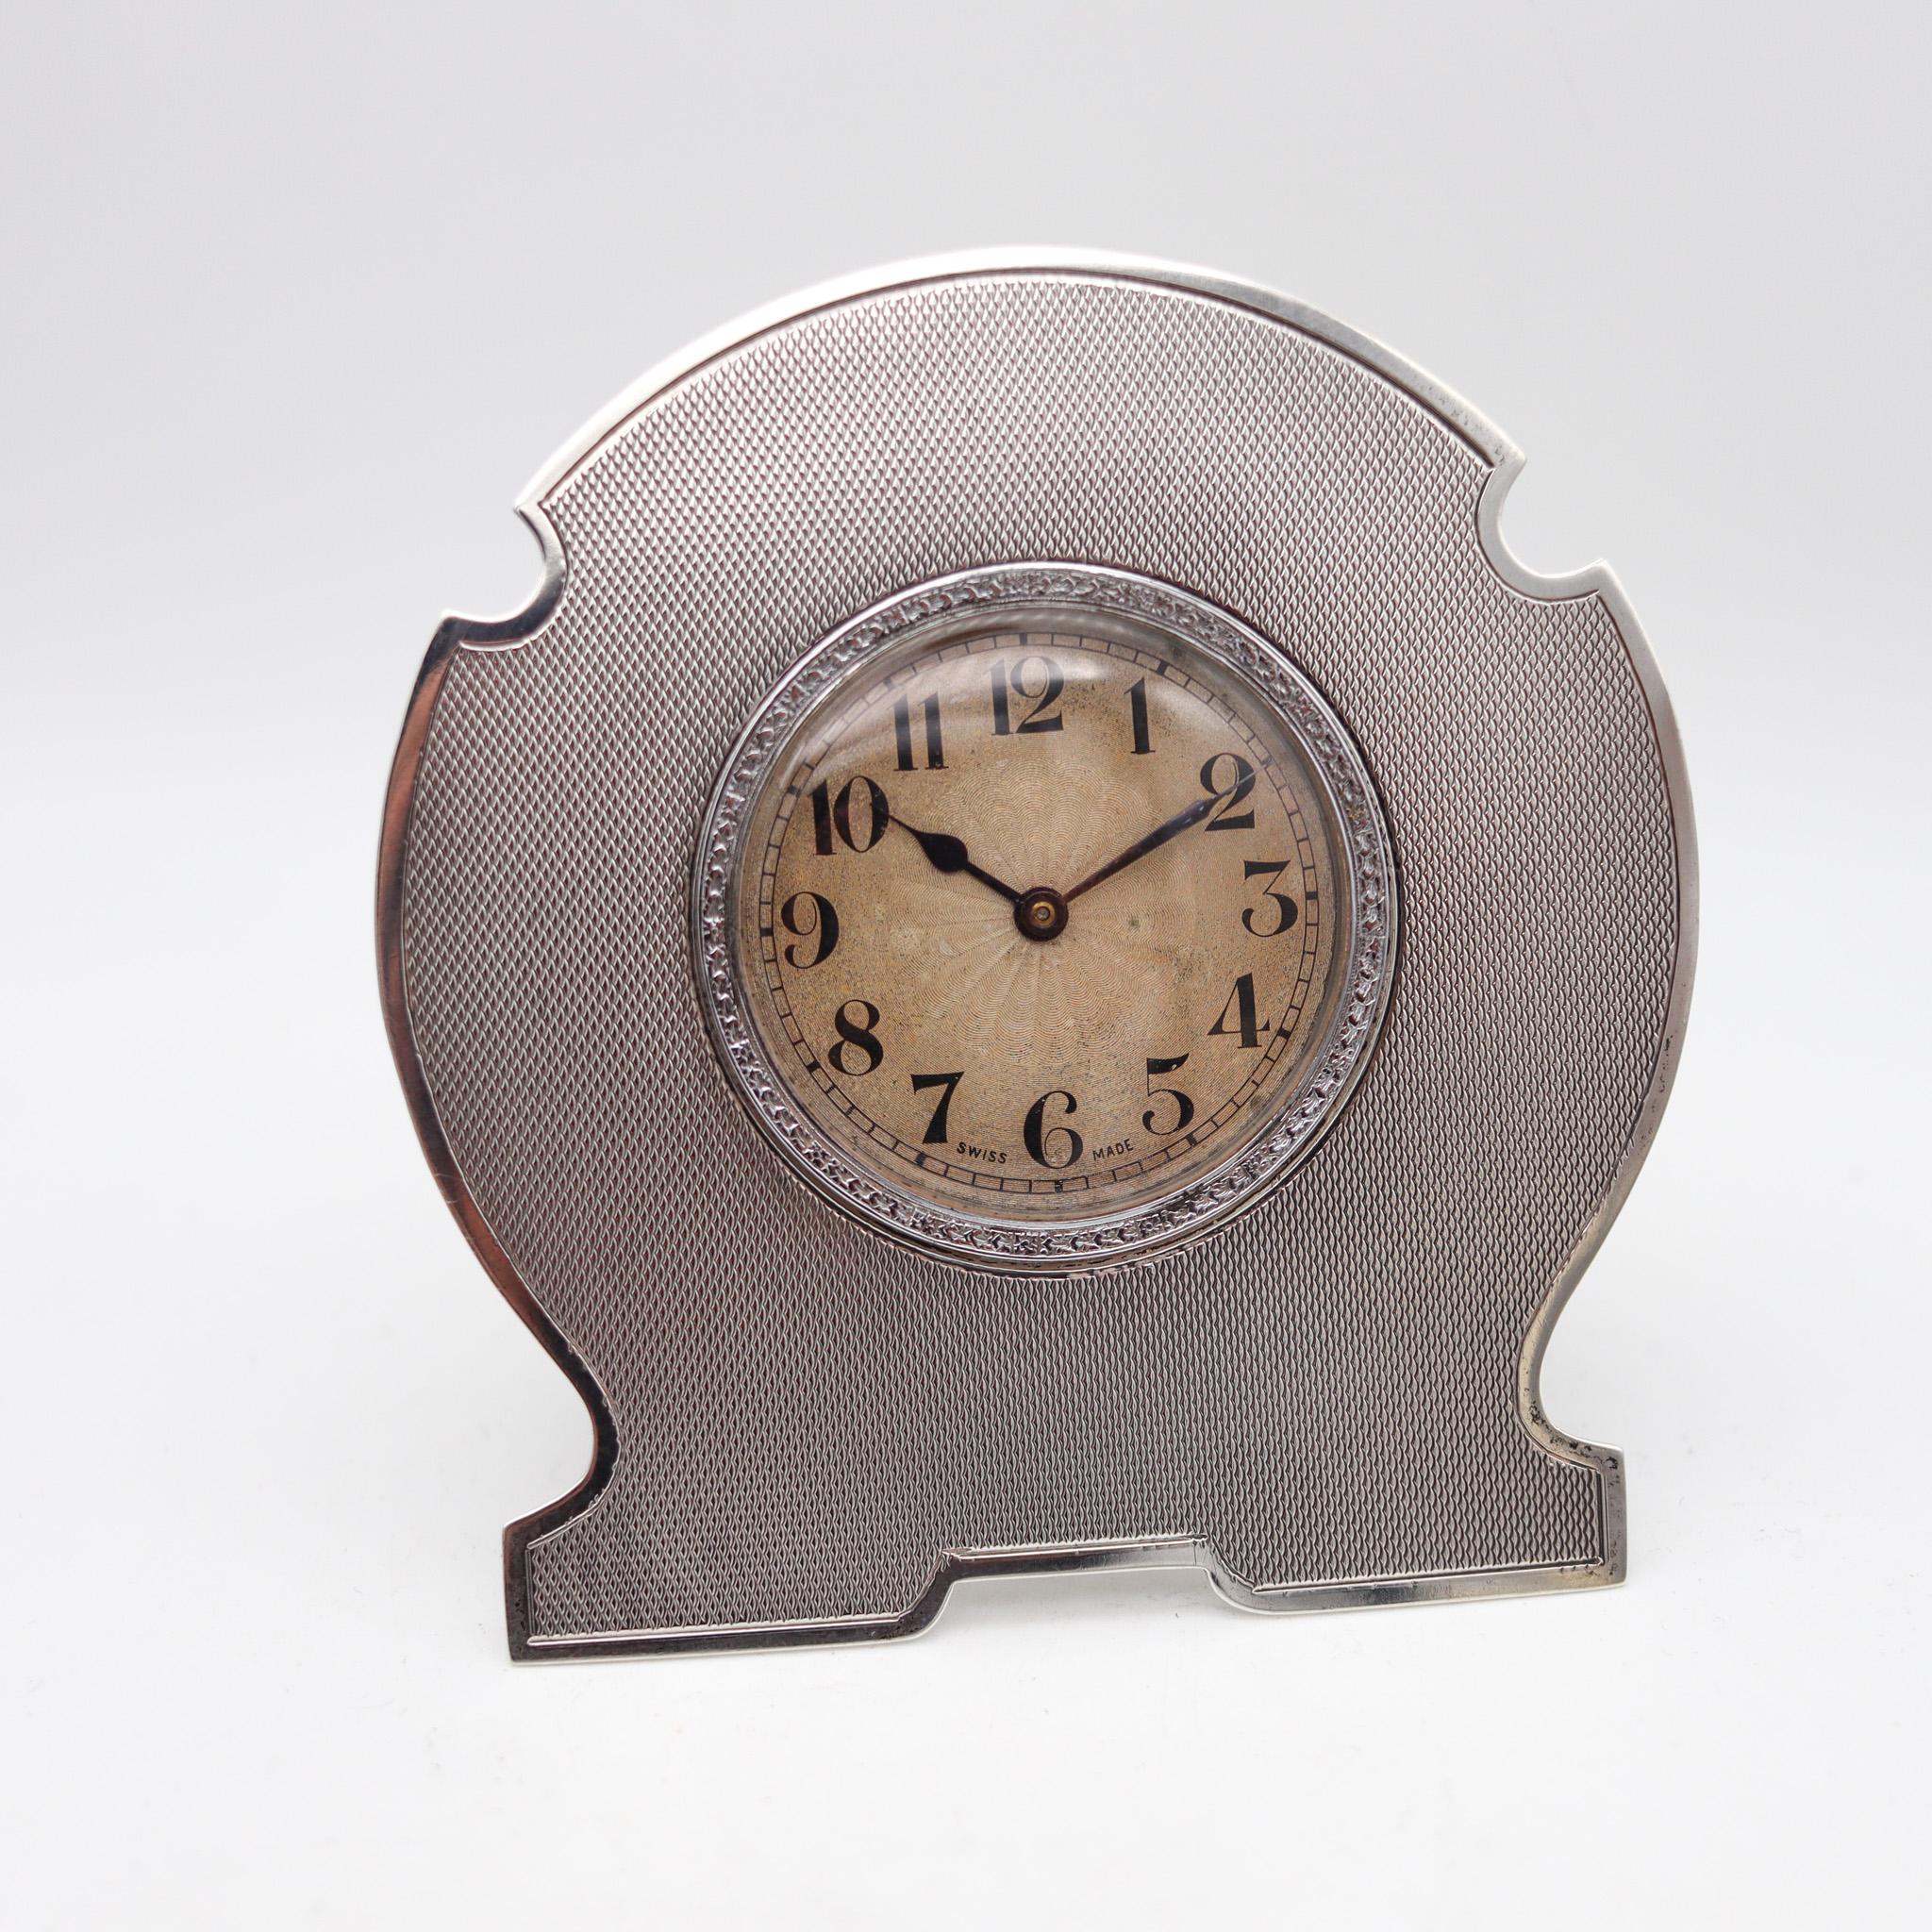 Une horloge de voyage miniature de style édouardien.

Très belle horloge de bureau ancienne, créée à Genève en Suisse au début du 20e siècle. Cette petite horloge antique a été fabriquée avec des détails exceptionnels, pendant la période